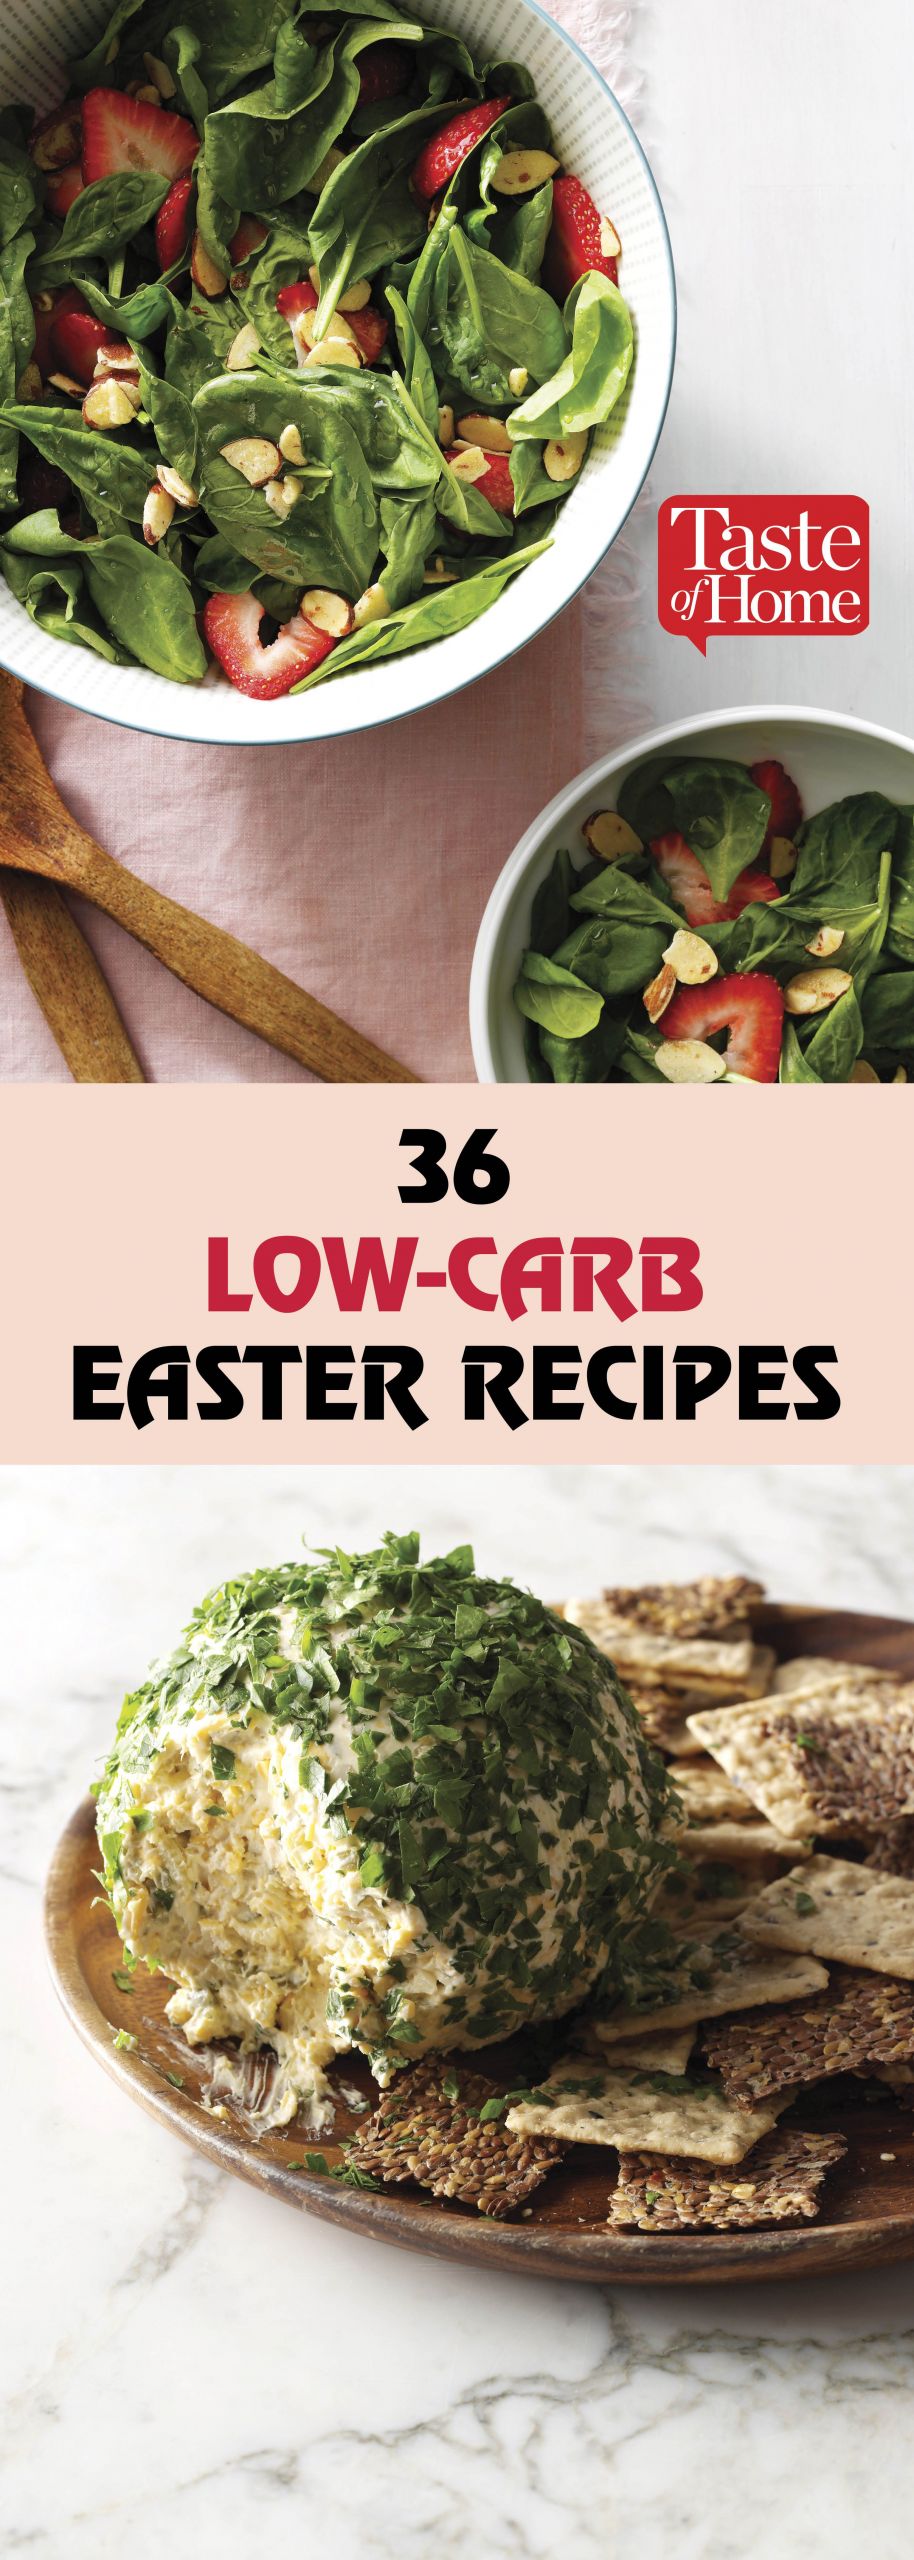 Low Carb Easter Recipes
 40 Low Carb Easter Recipes